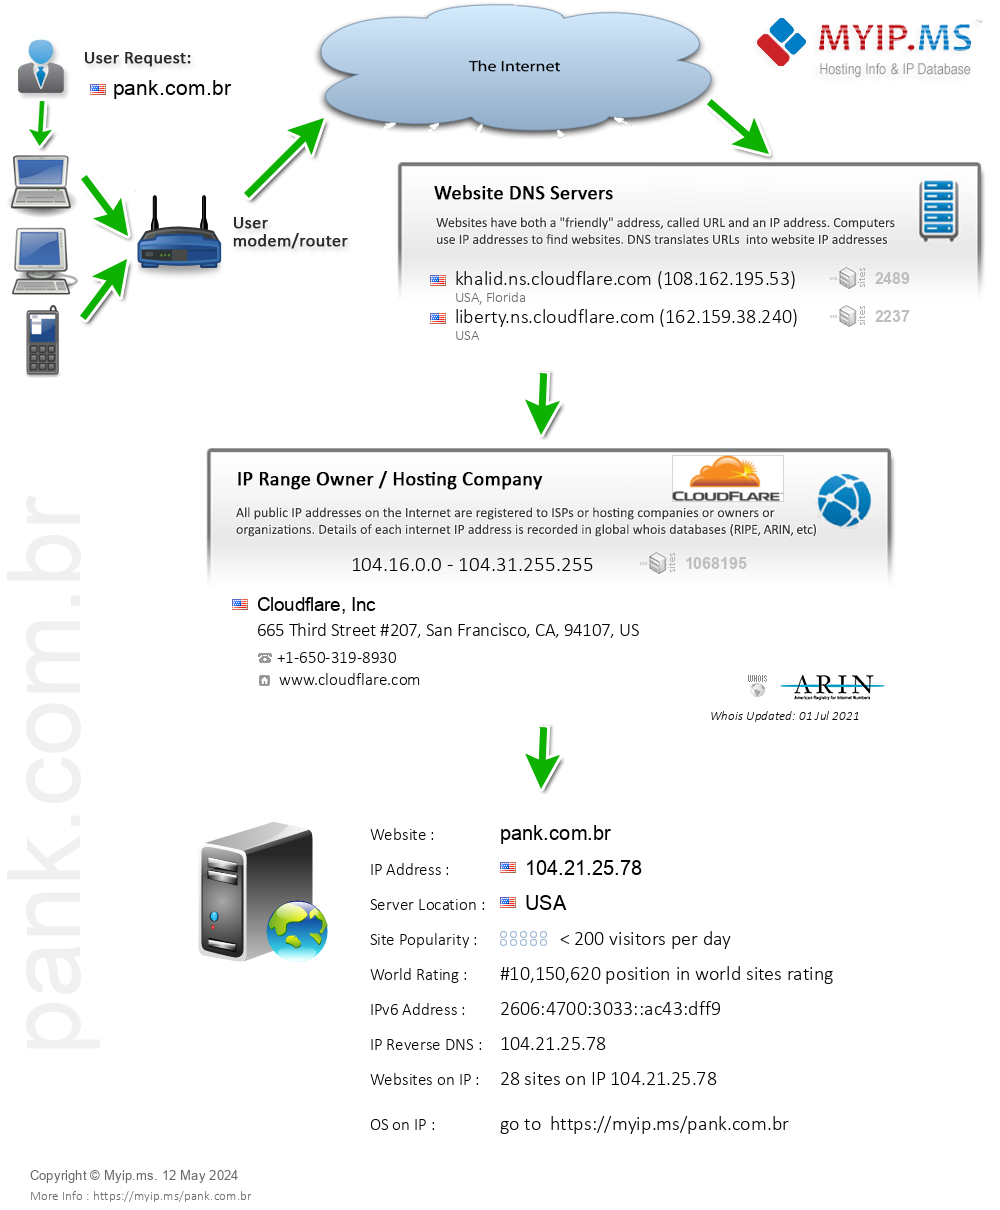 Pank.com.br - Website Hosting Visual IP Diagram